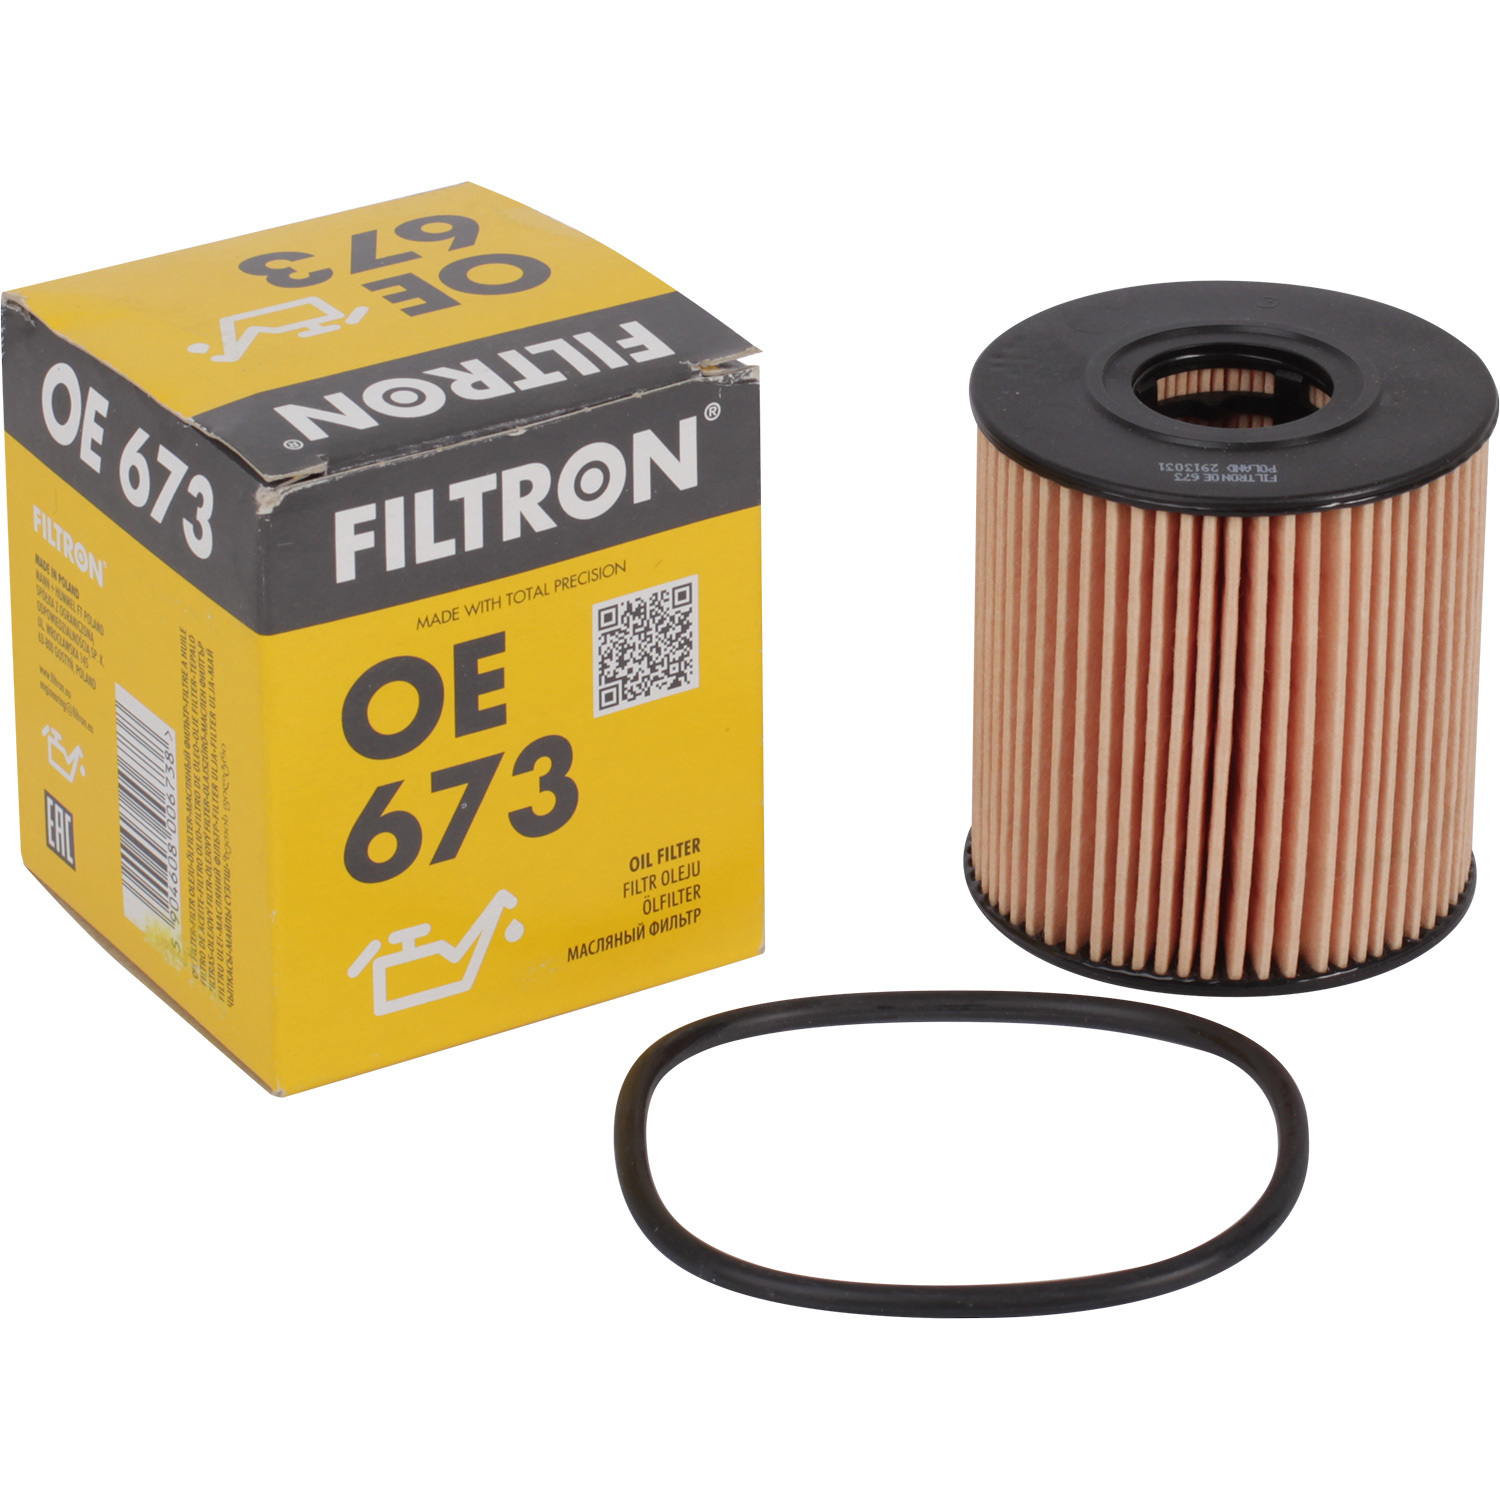 фильтры filtron фильтр масляный filtron oe6852 Фильтры Filtron Фильтр масляный Filtron OE673